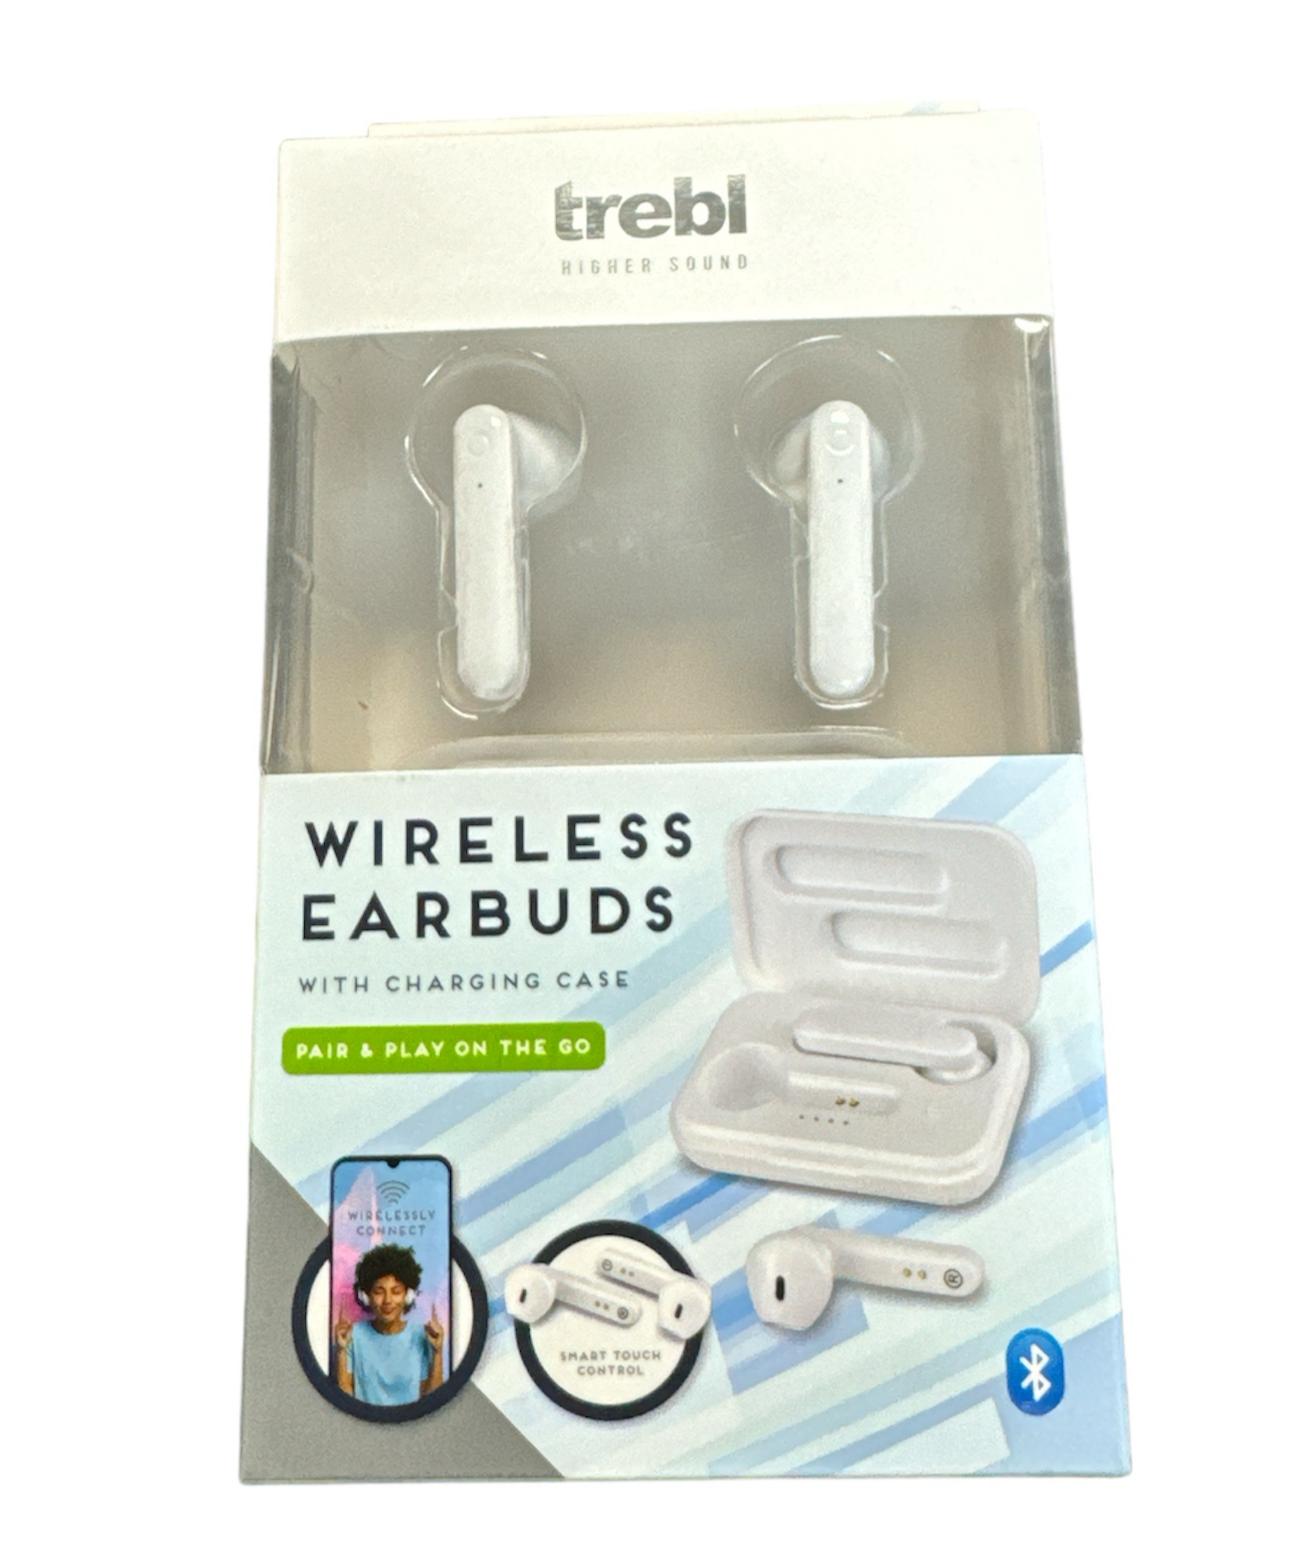 Trebl Wireless Earbuds Brand New